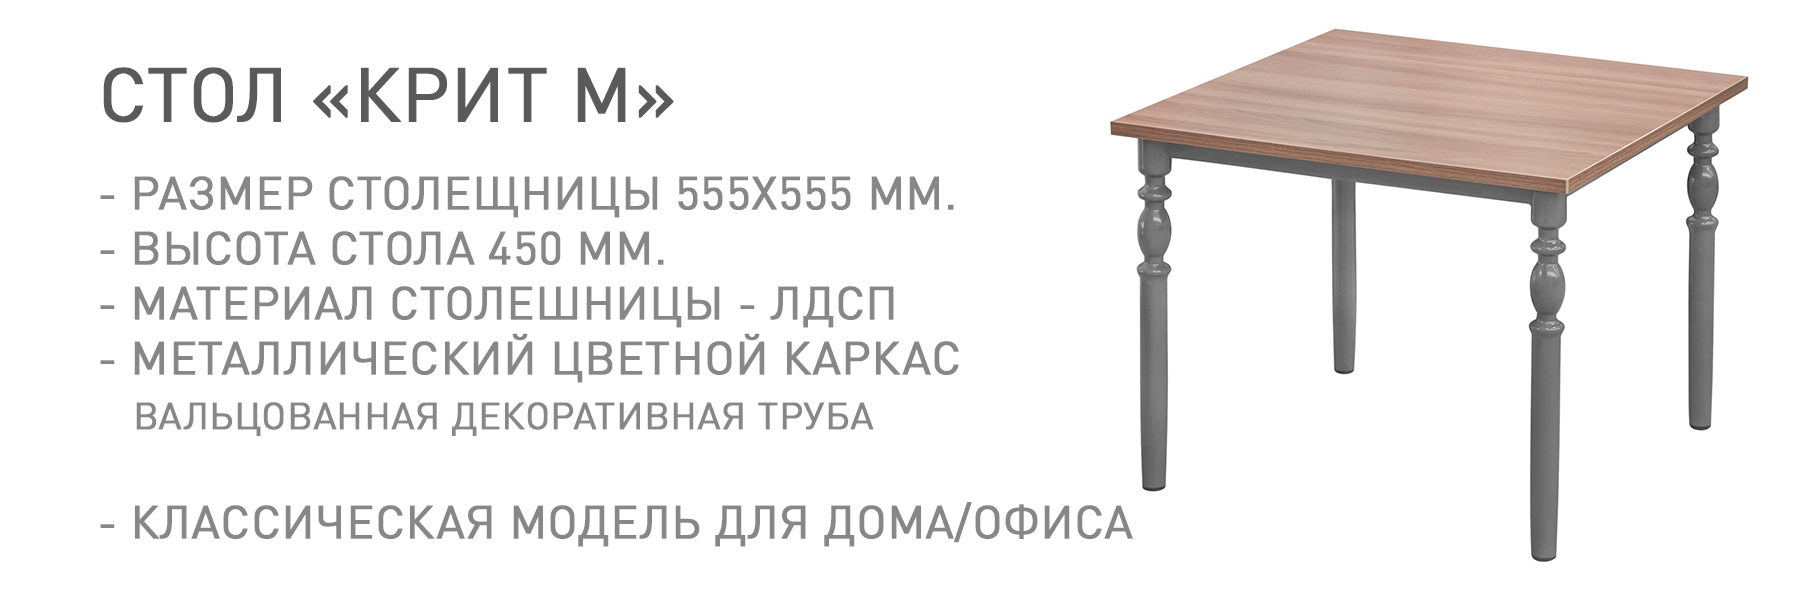 КРИТ-М-МП-ТВ-044583.jpg